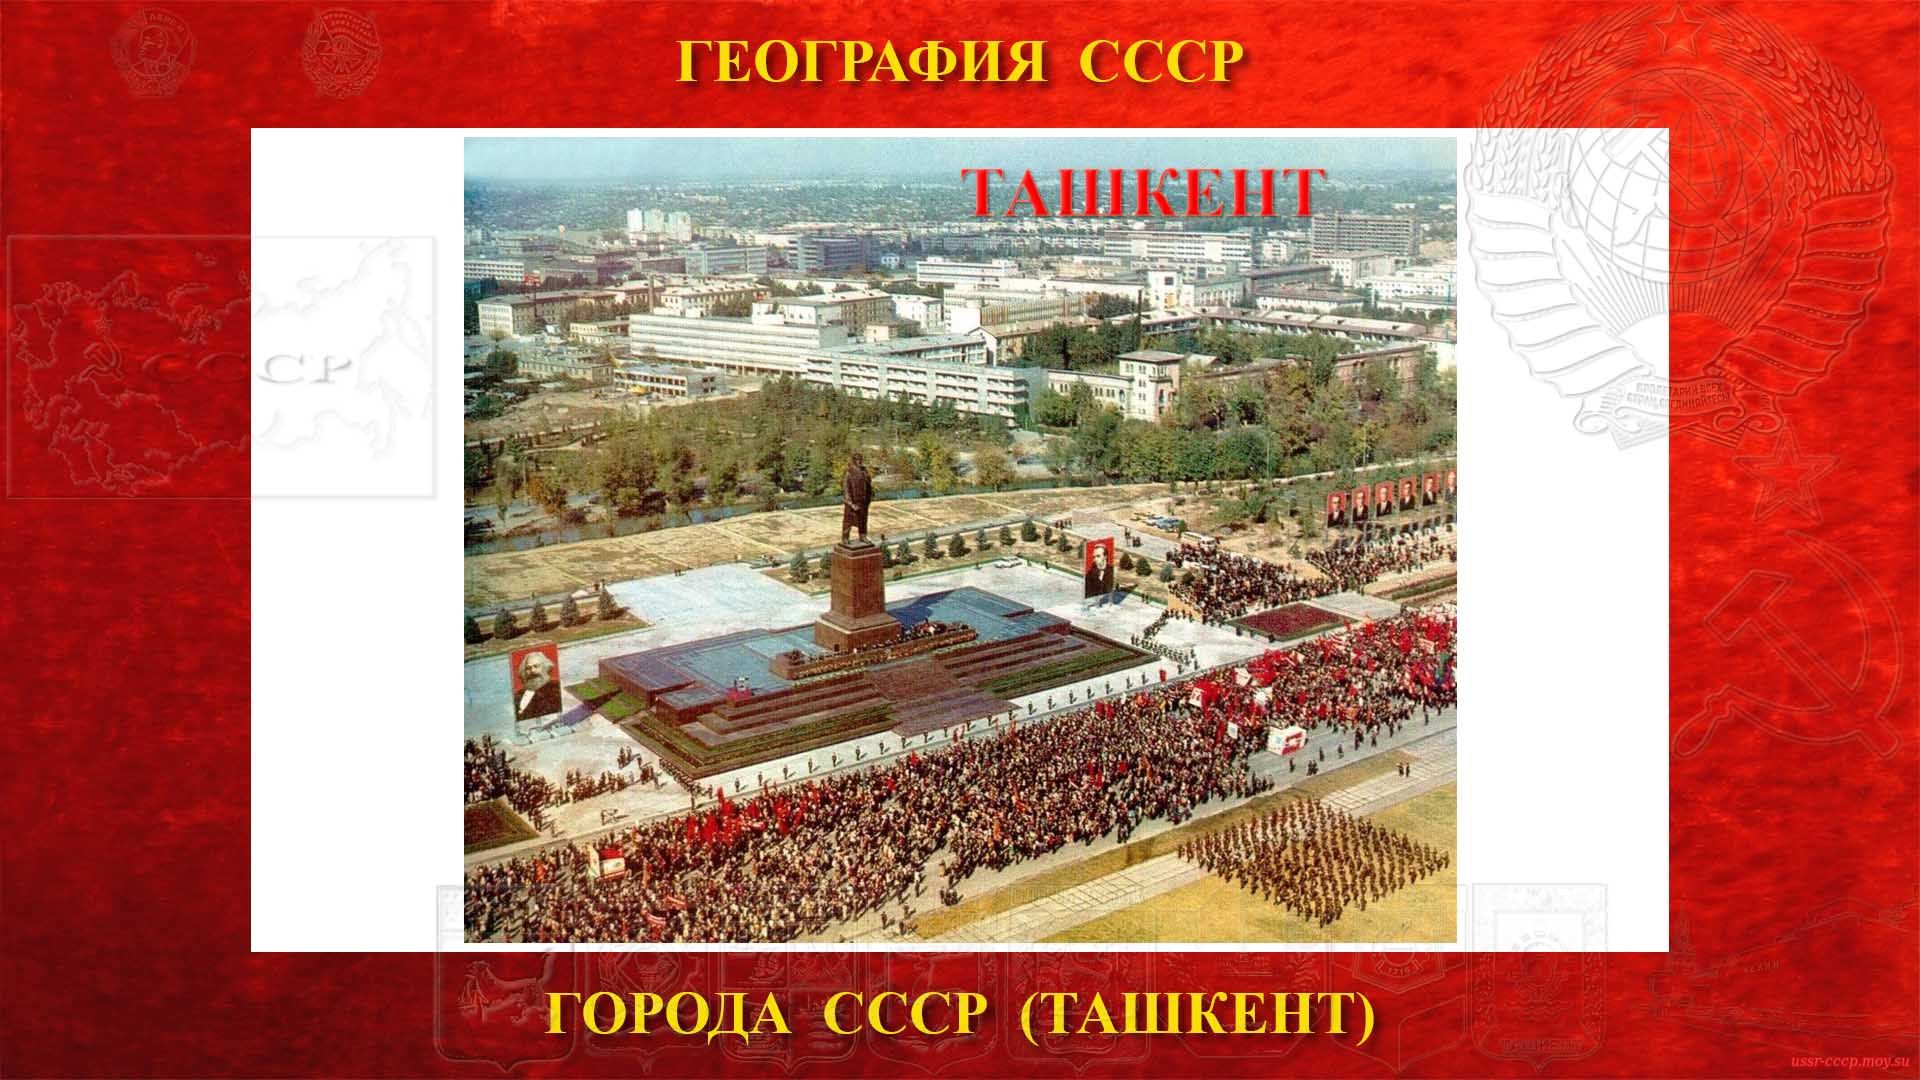 Ташкент — Город СССР — Столица УзССР (1930)